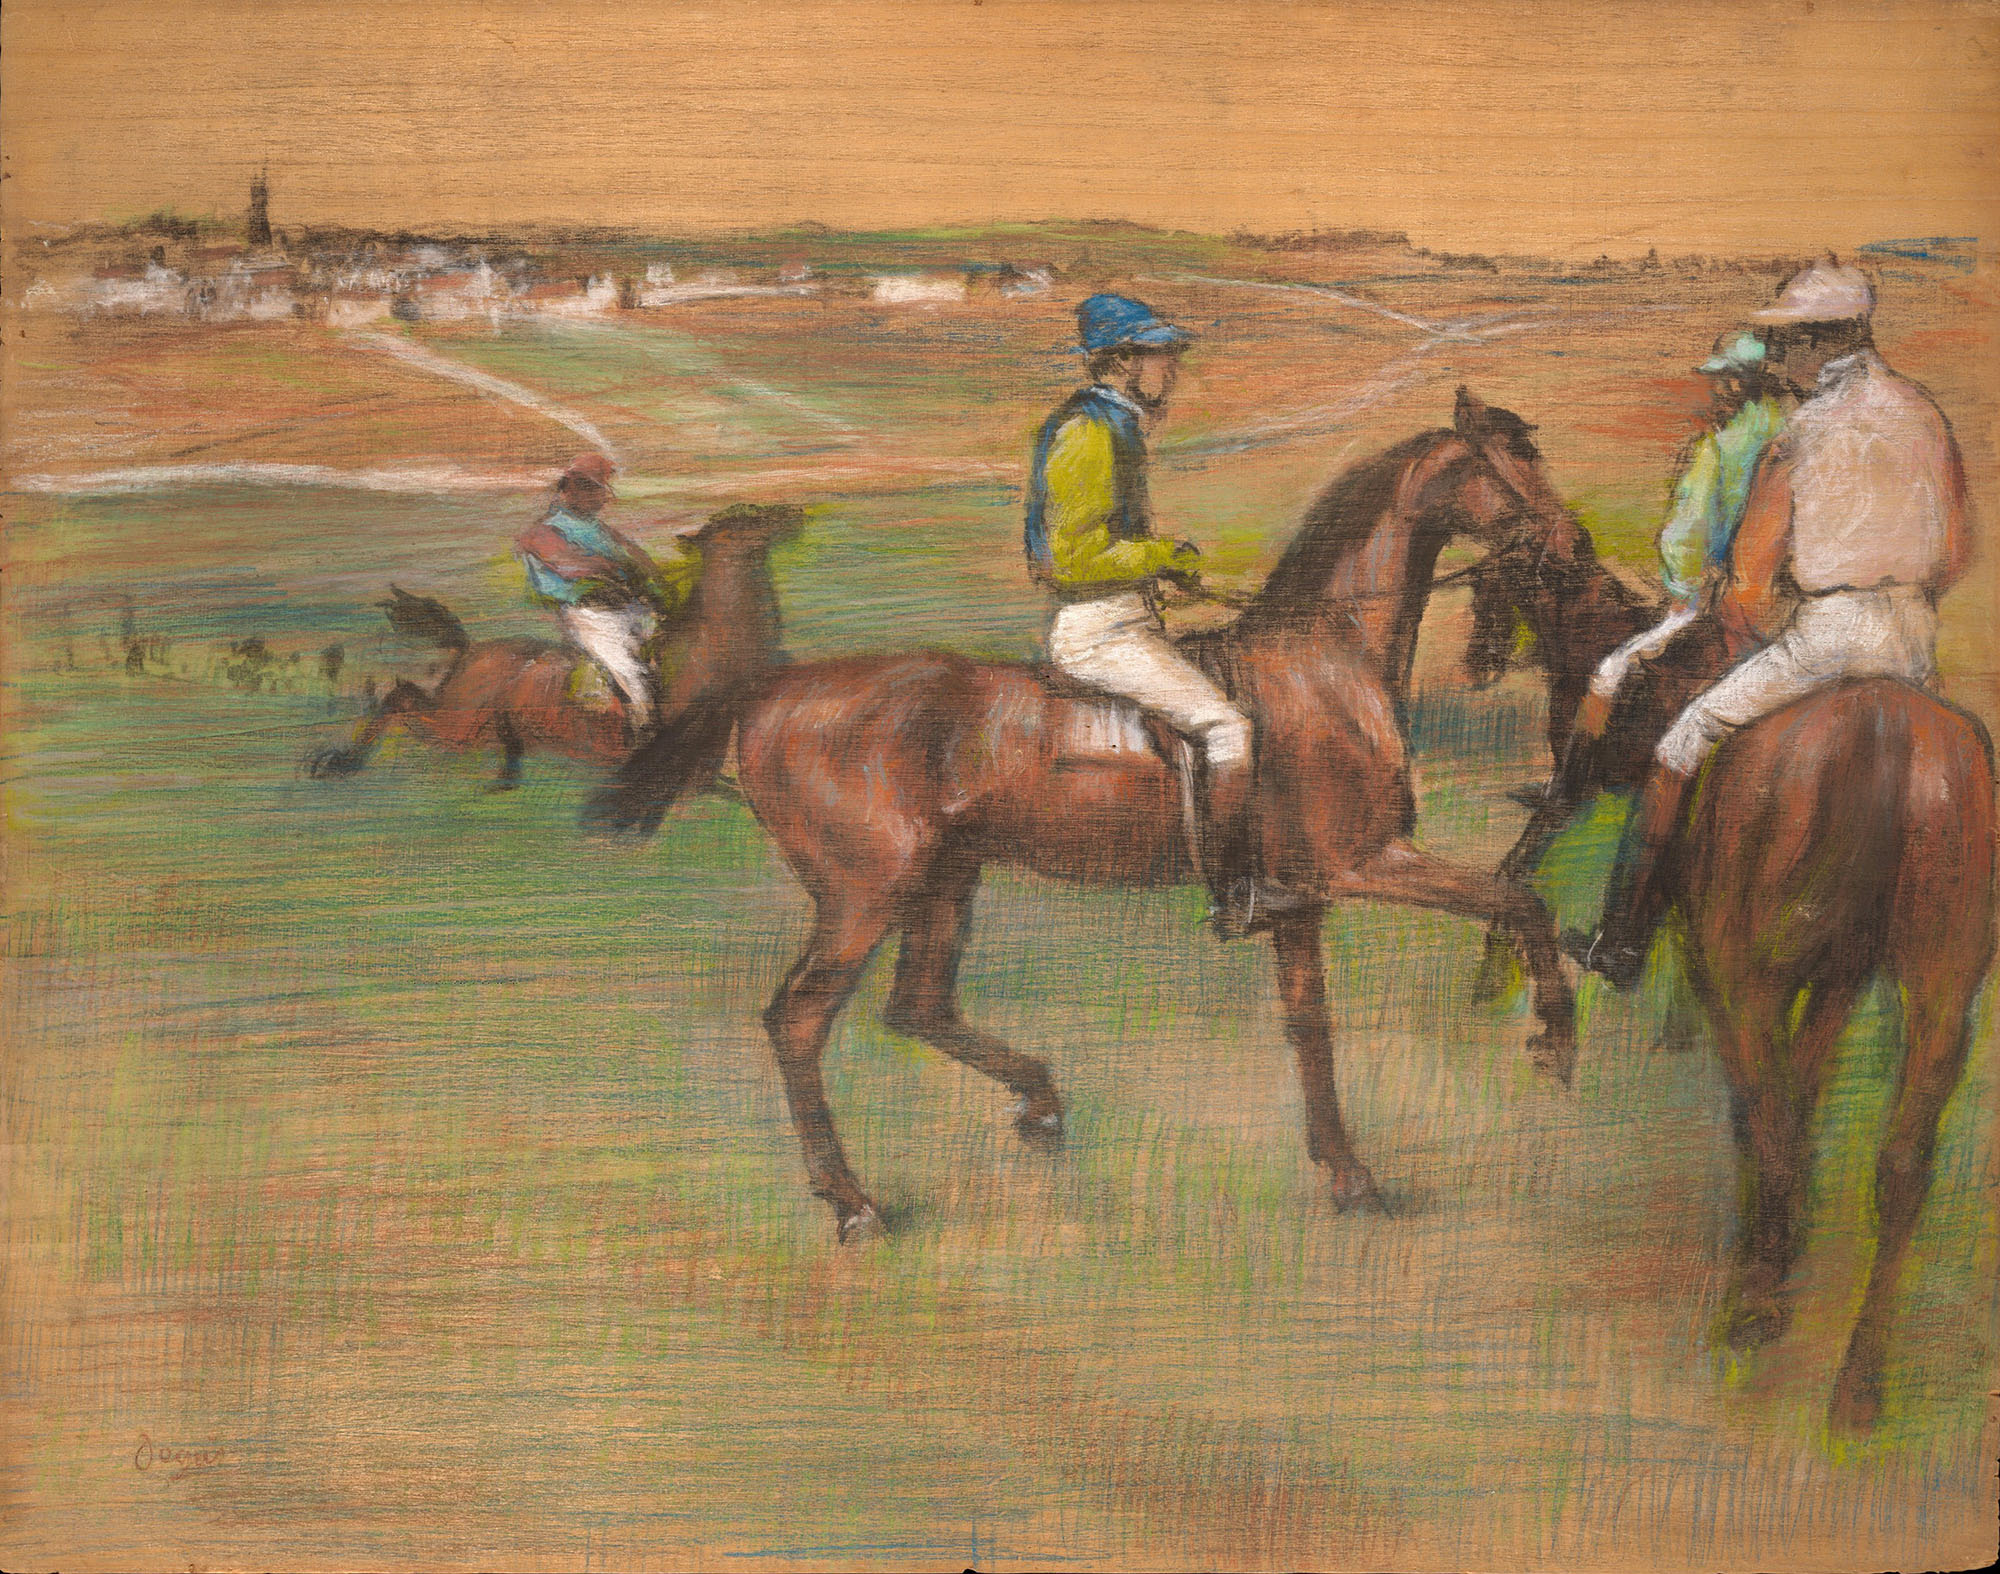 Эдгар Дега. "Беговые лошади". 1885-1888. Музей Метрополитен, Нью-Йорк.